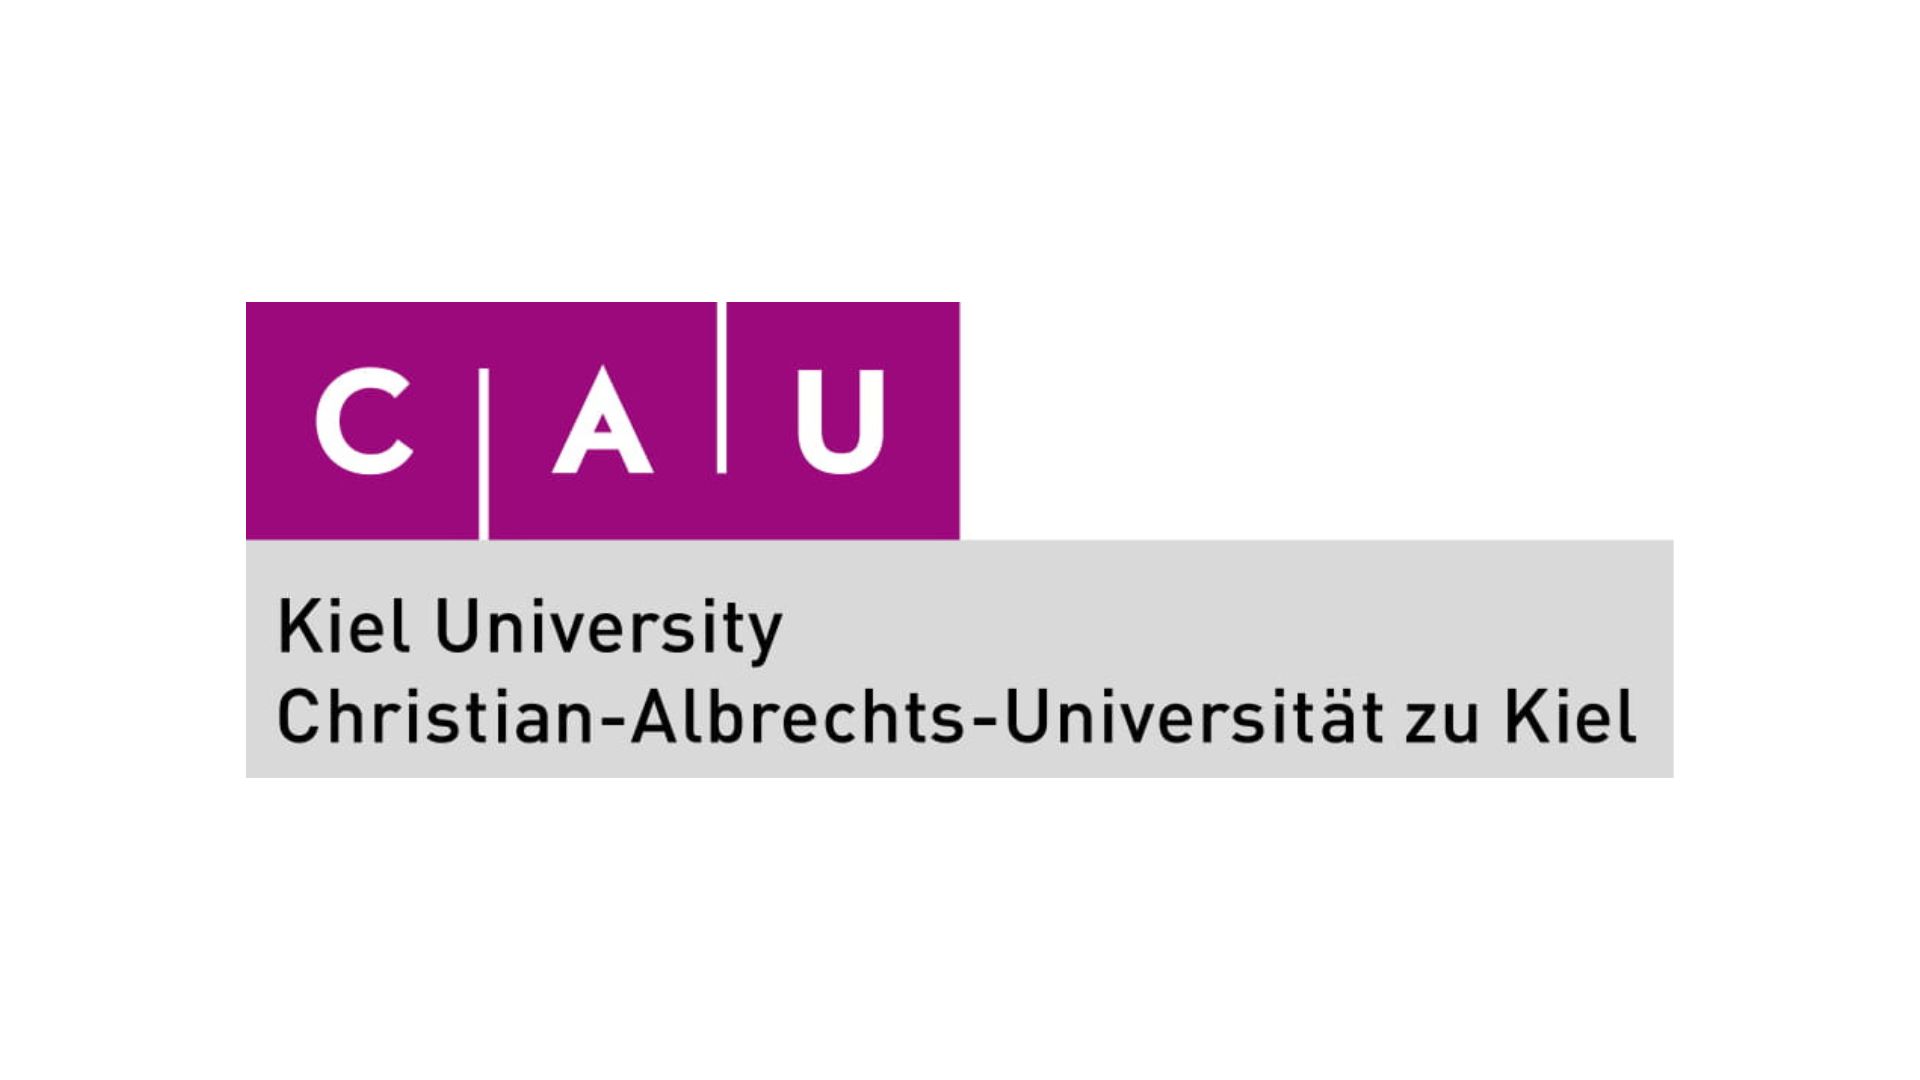 Christian-Albrechts-Universität zu Kiel (CAU) / Kiel University